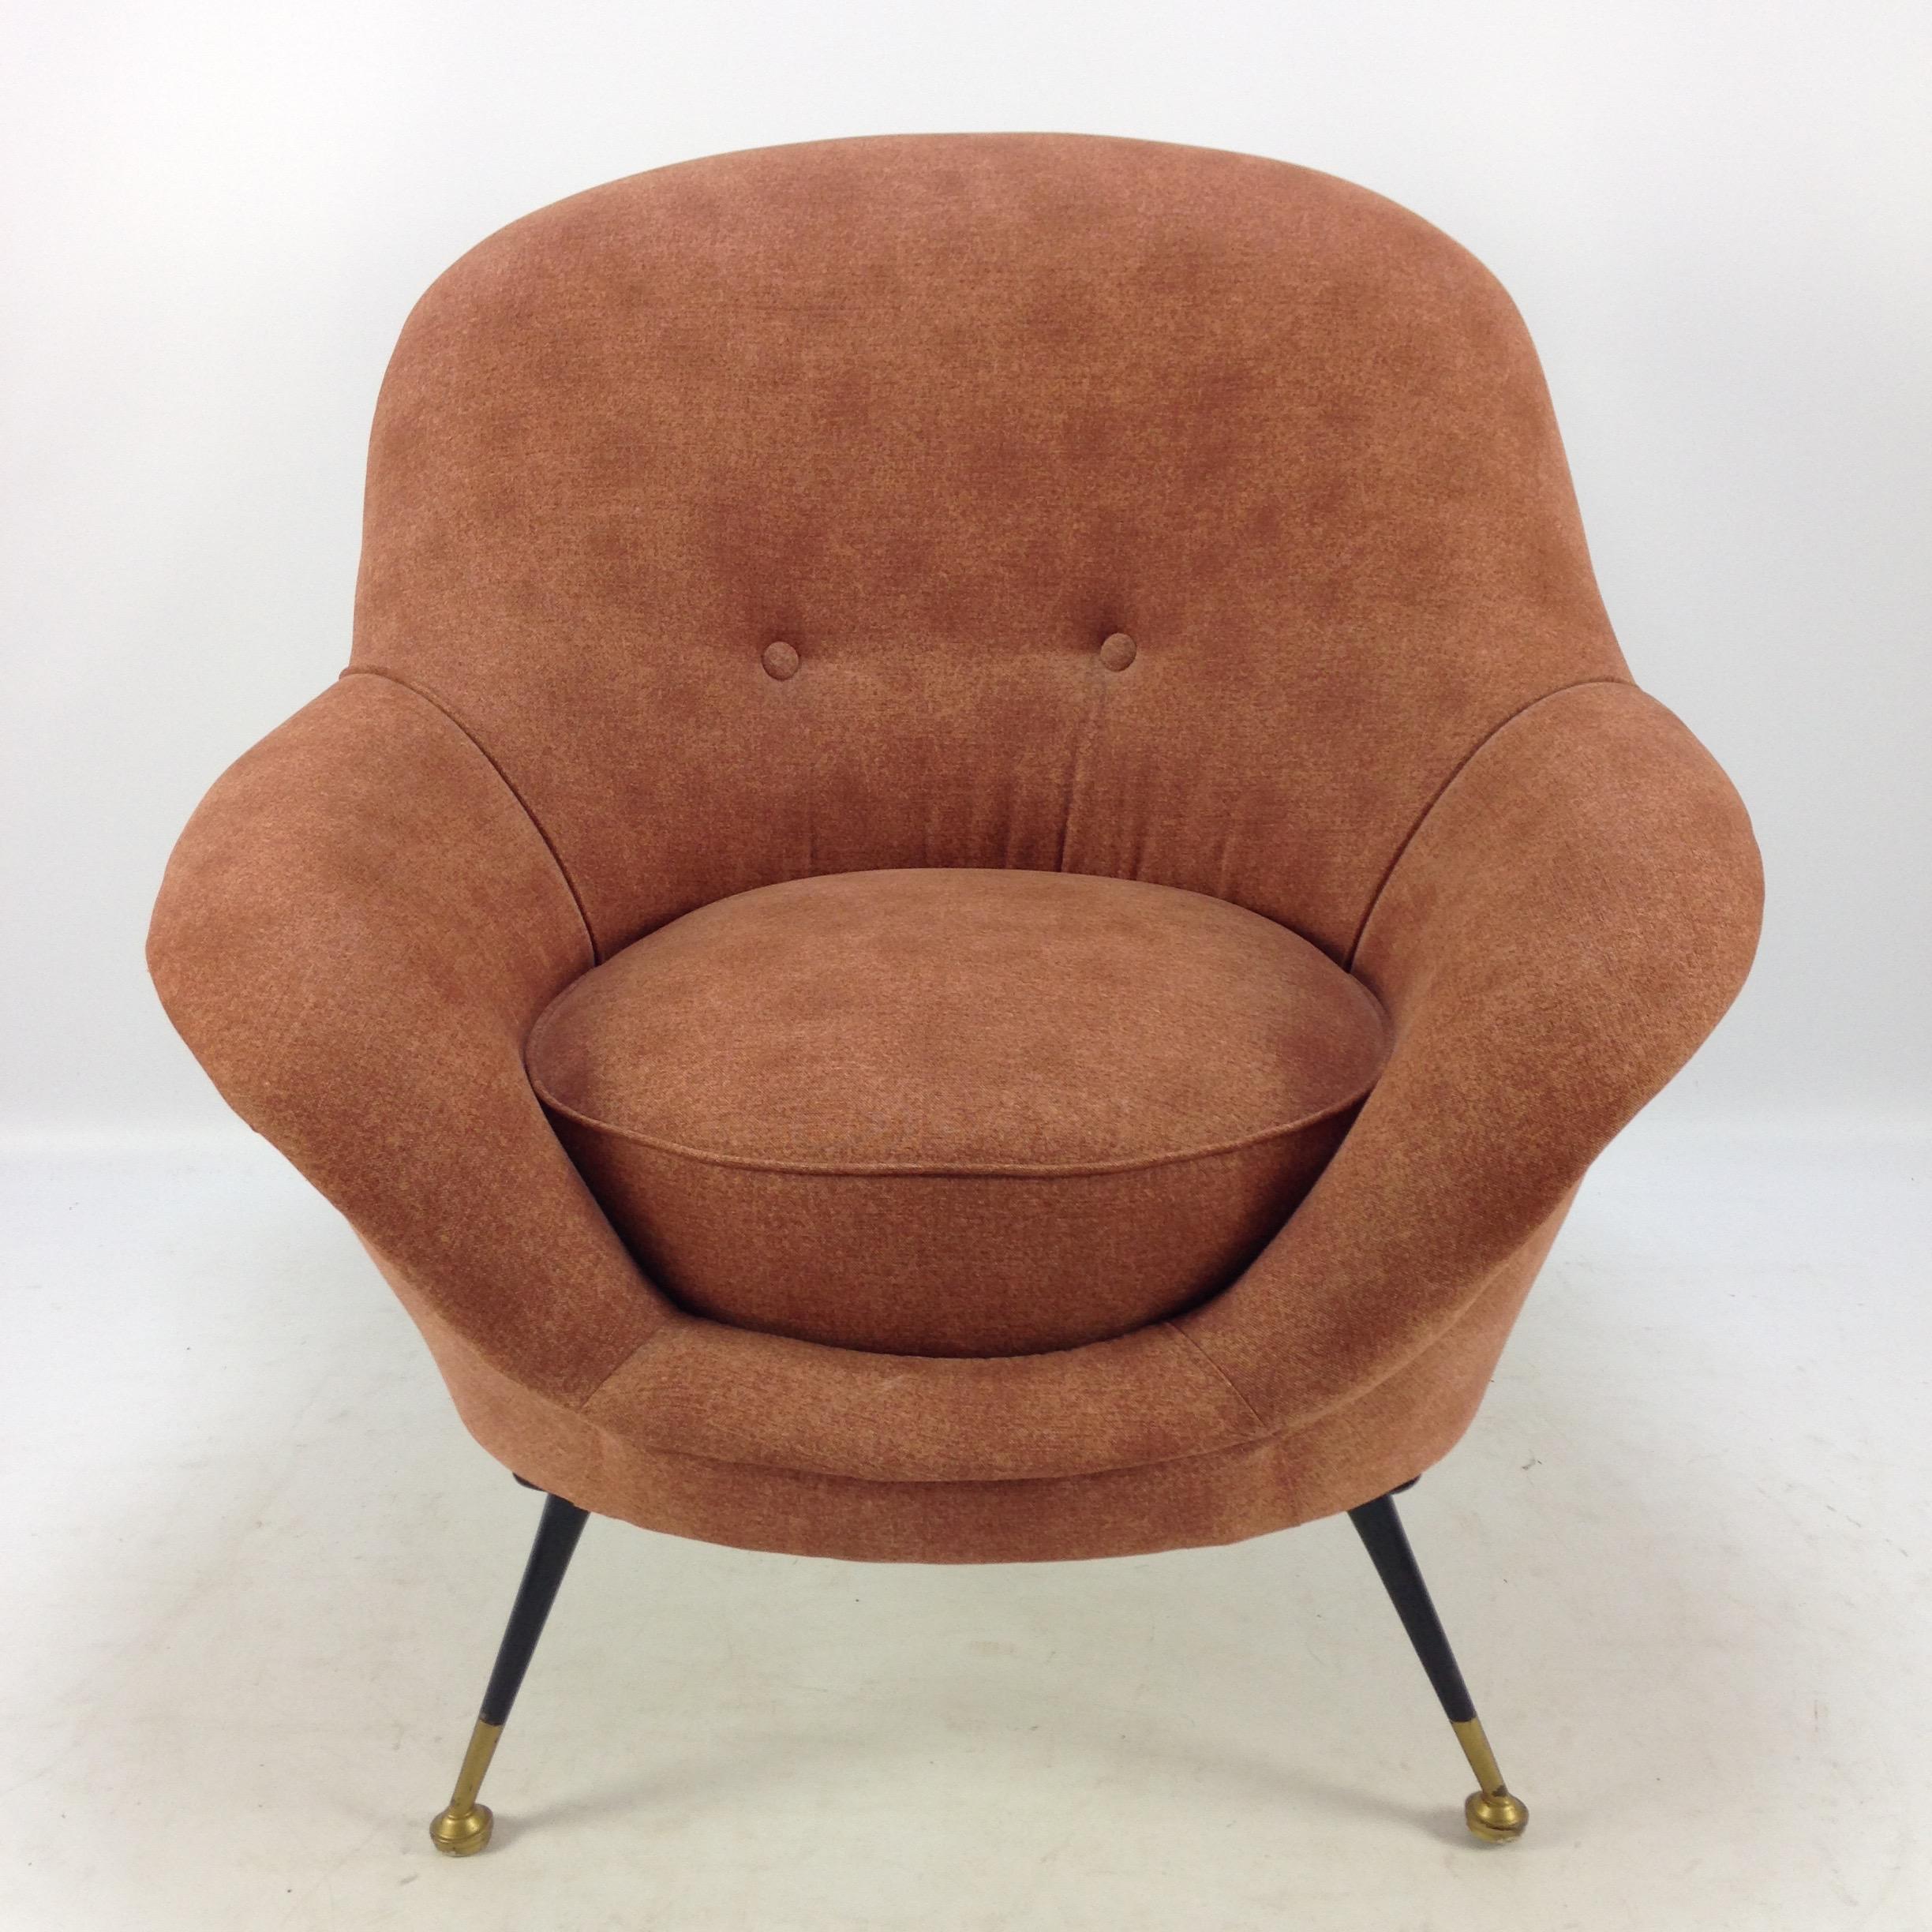 Sehr schönes Paar italienischer Sessel, hergestellt in den 50er Jahren.

Bequemer Sitz und elegantes Design in einem. 

Gepolstert mit schönem Stoff. 

Die Stühle sind in sehr gutem Zustand.